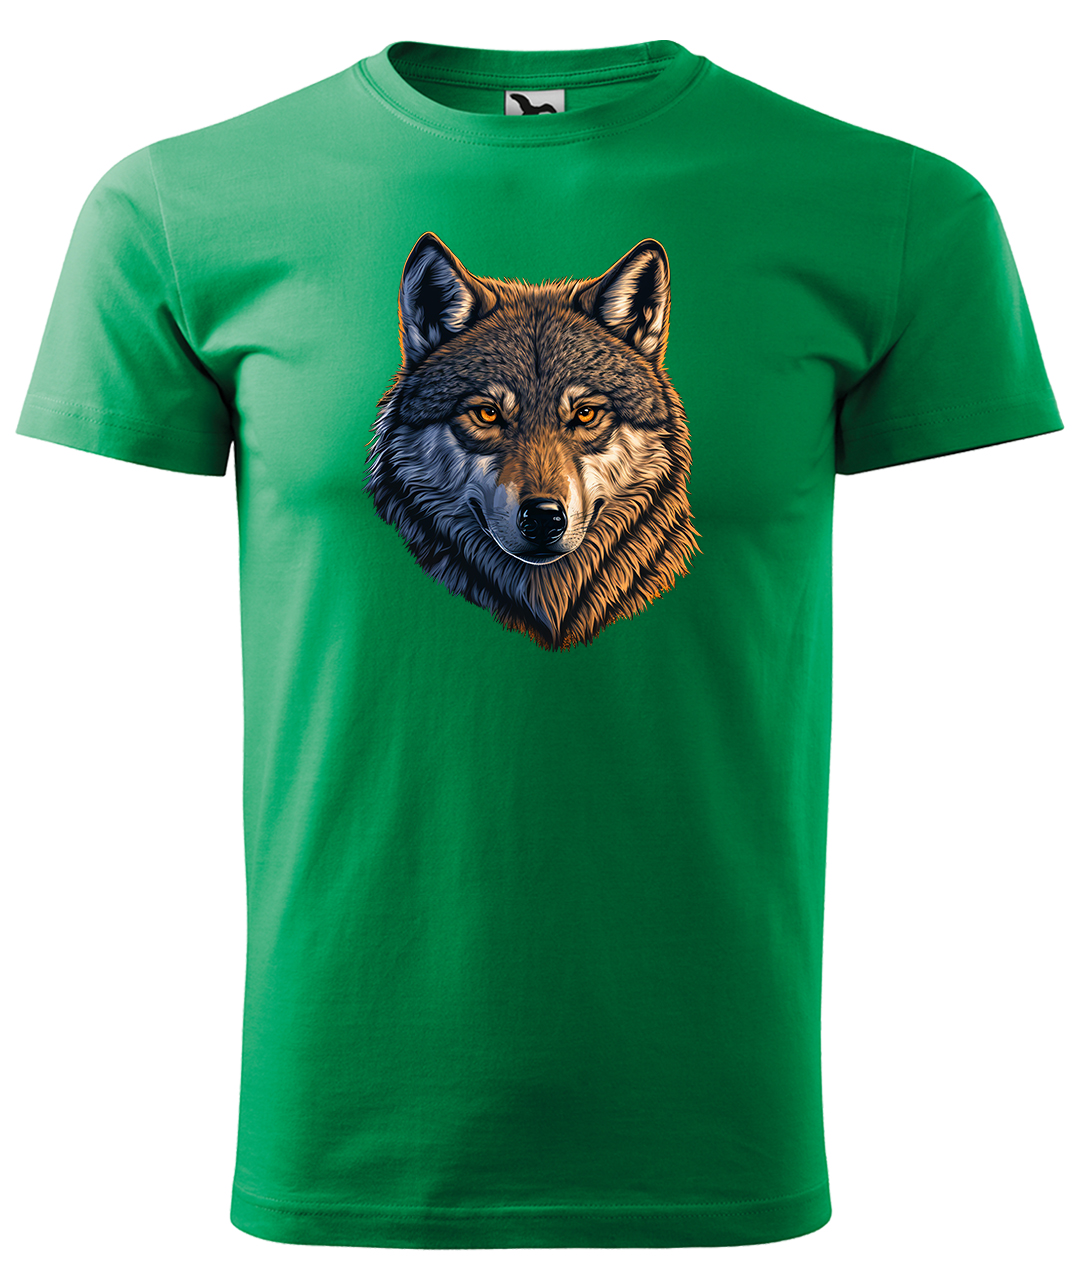 Dětské tričko s vlkem - Hlava vlka Velikost: 8 let / 134 cm, Barva: Středně zelená (16), Délka rukávu: Krátký rukáv